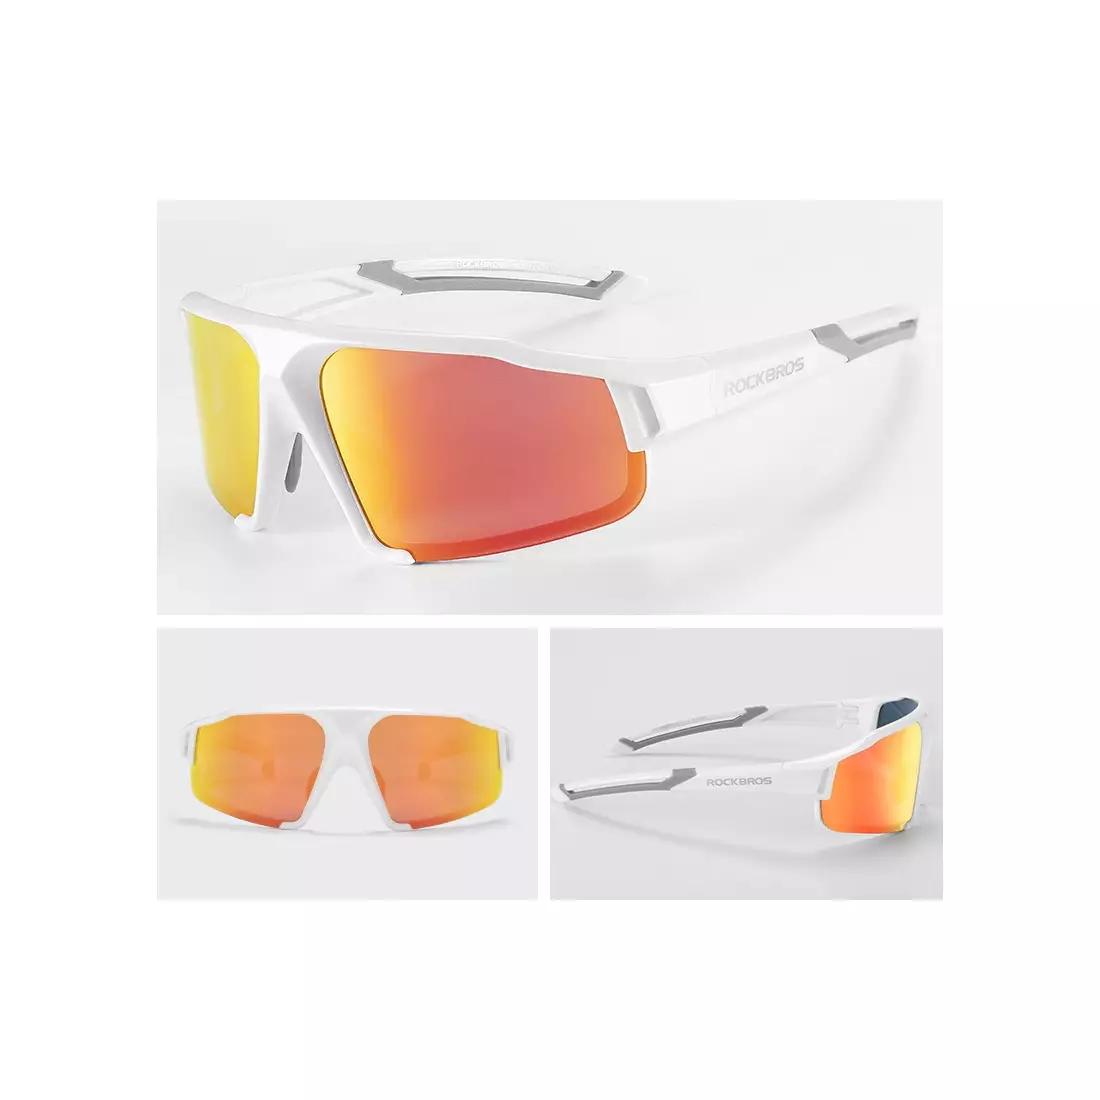 Rockbros SP216WR Fahrrad / Sportbrille mit polarisiertem Weiß